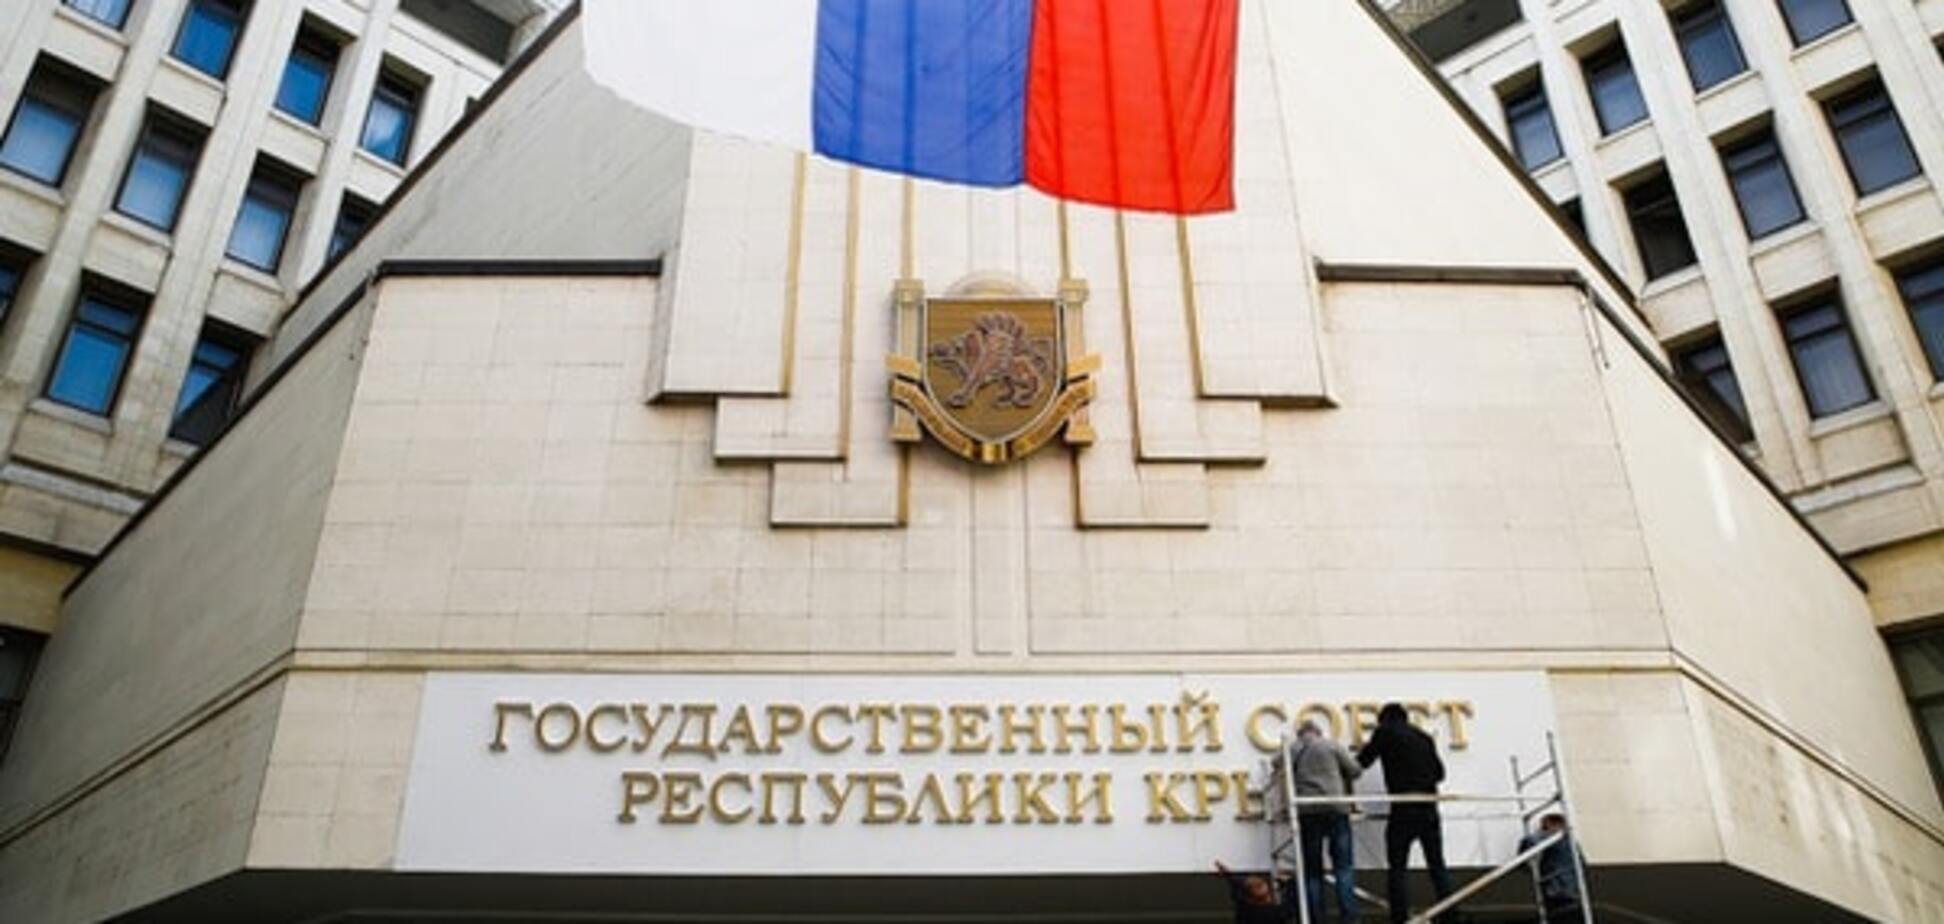 Бунт на кораблі! У Севастополі ініціювали відставку 'неефективного уряду'